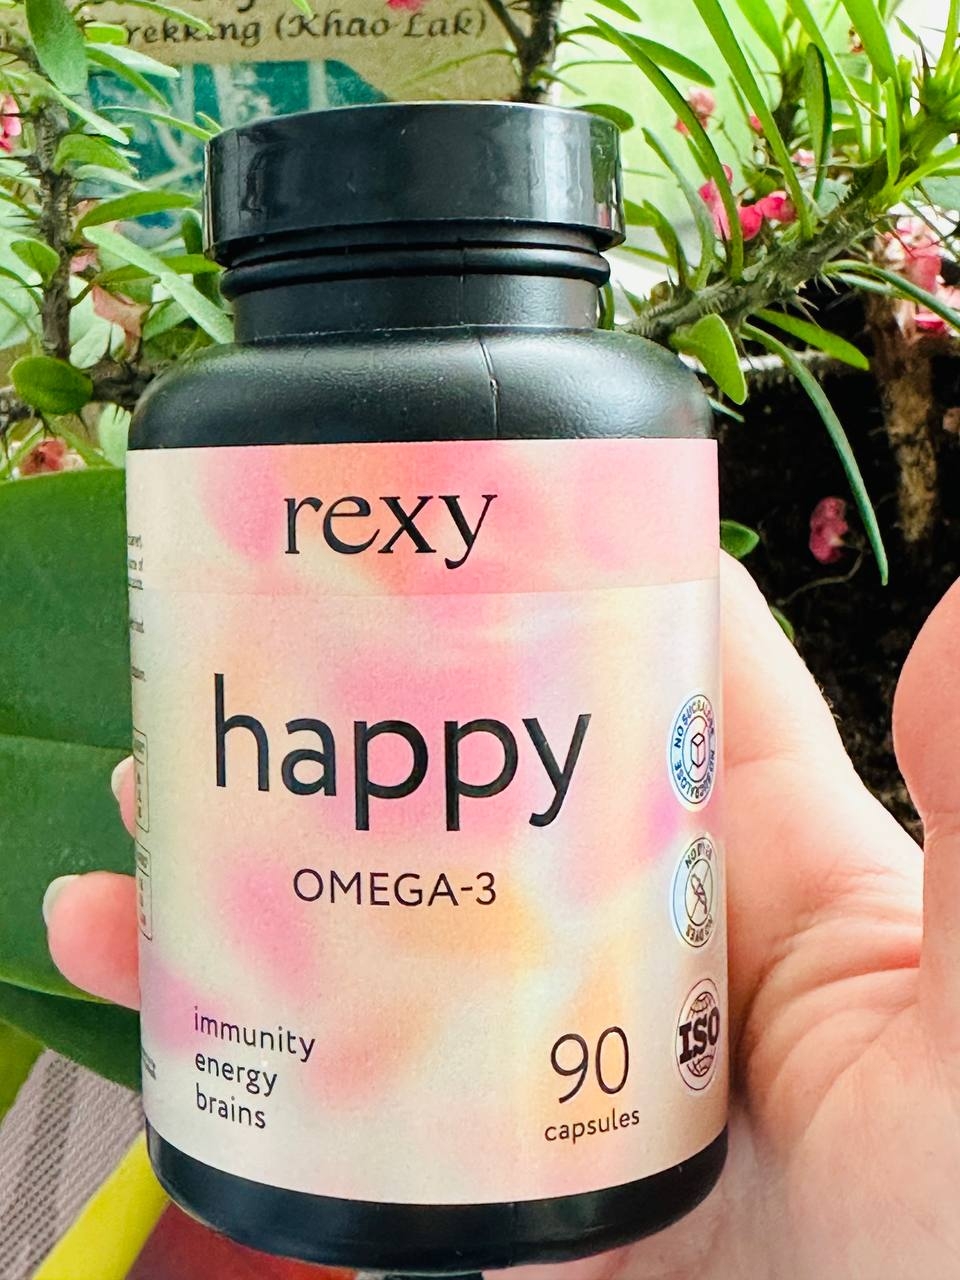 ProteinRex Rexy Happy Омега 3 витамины из чилийского лосося - Омега 3 Rexy понравились качеством и ценой.